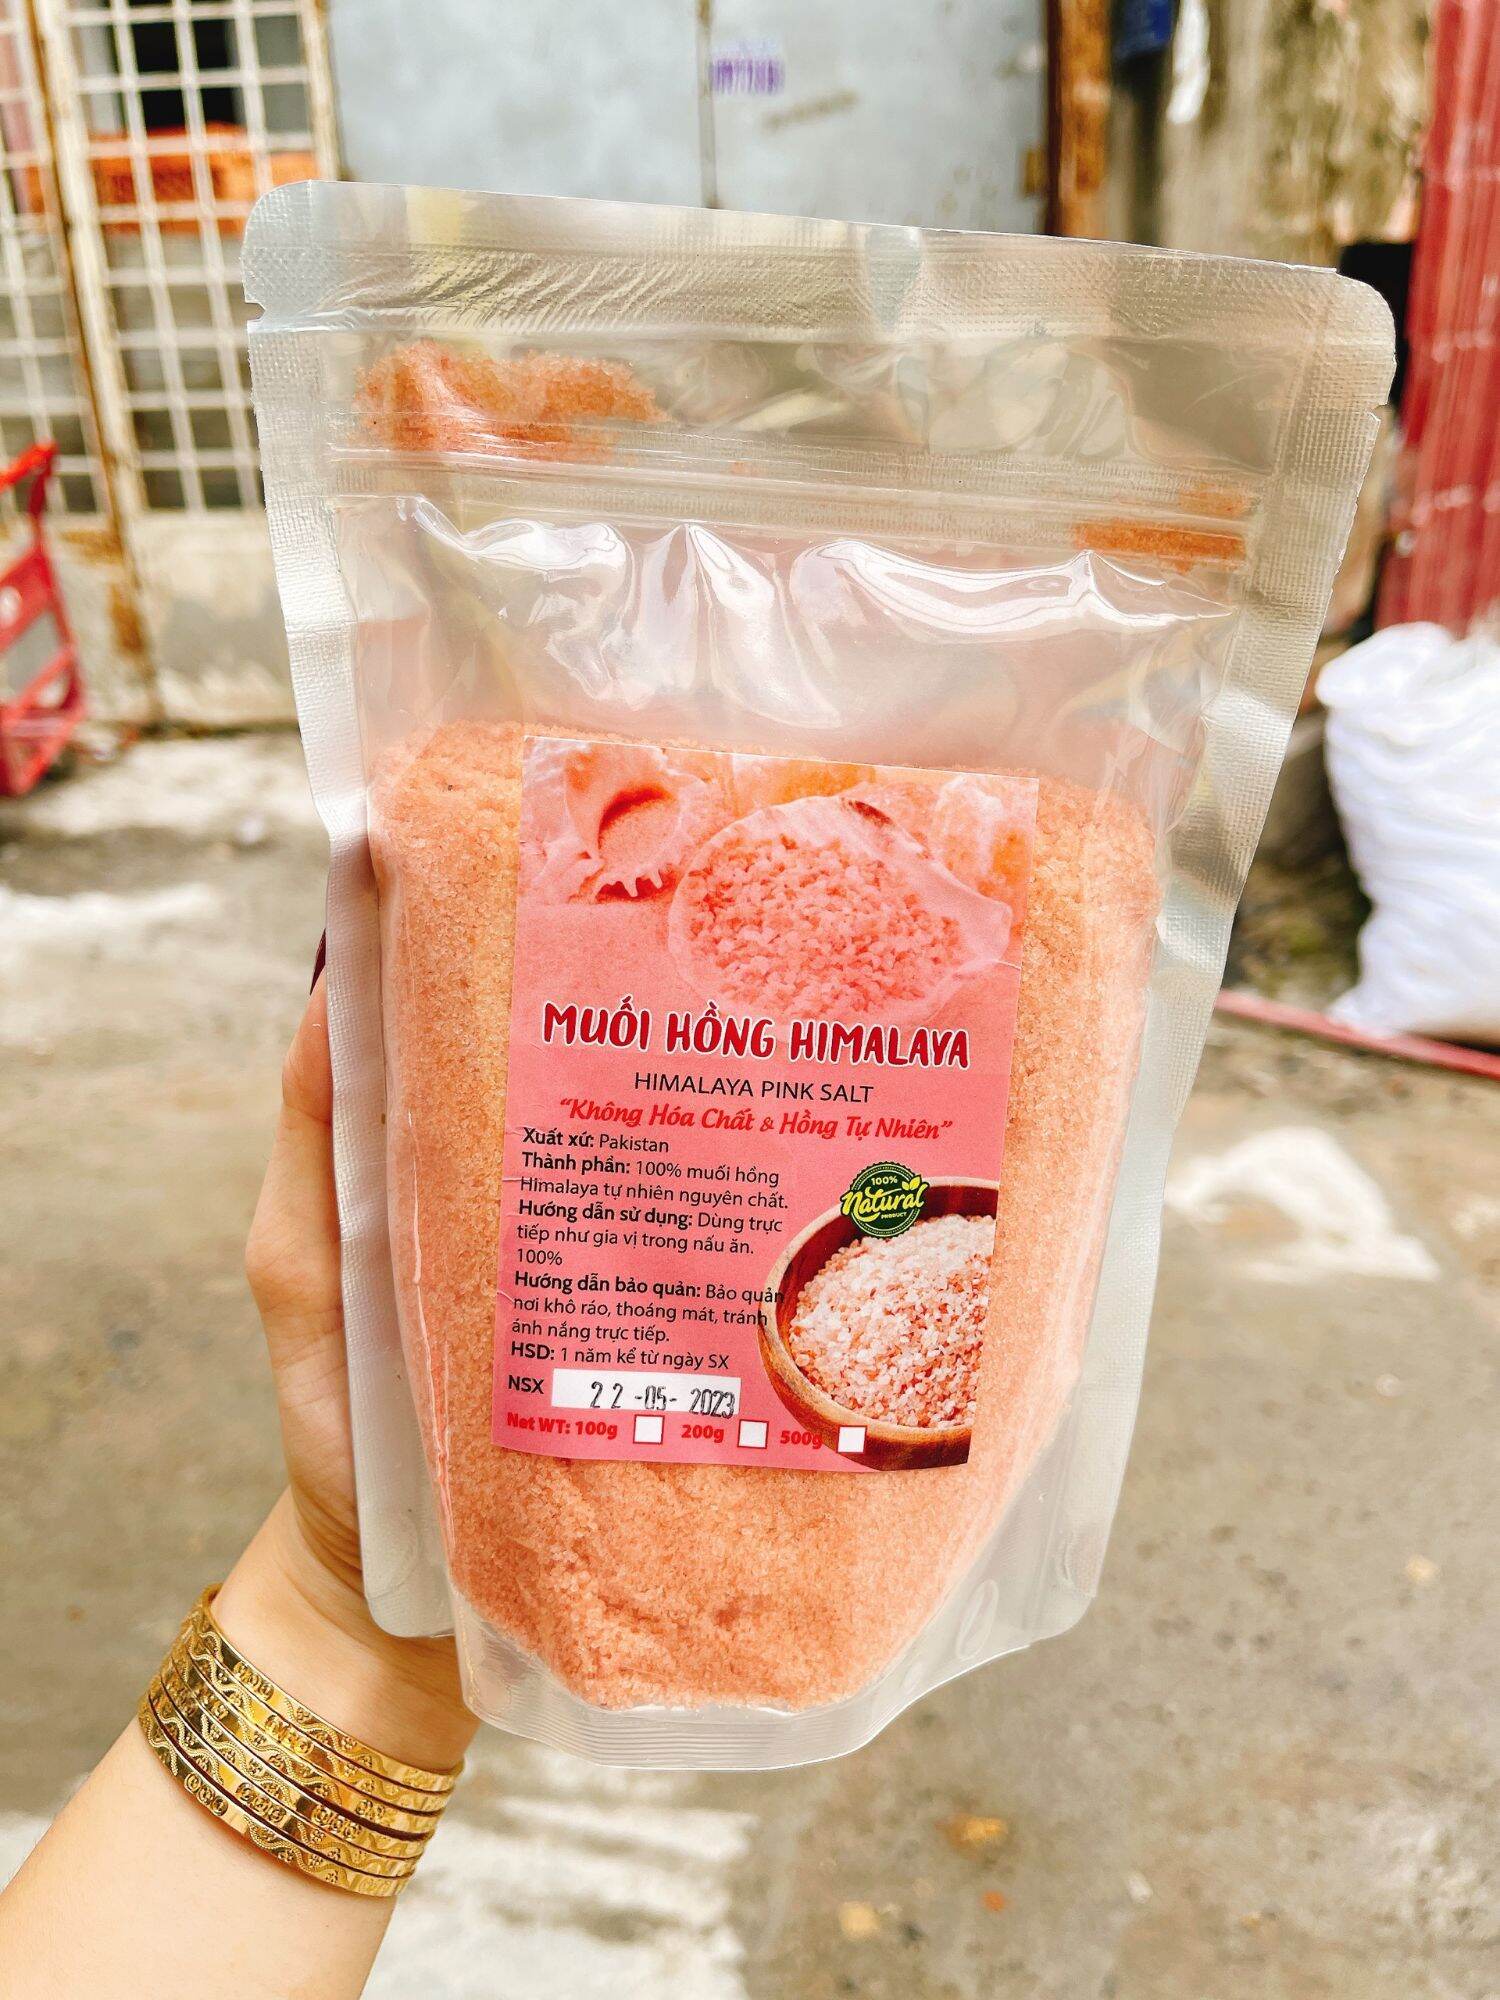 Muối hồng himalaya nguyên chất không hóa chất và hồng tự nhiên bịch 500gr. Muối himalaya, muối hồng, muối như hình chụp, hạn sử dụng 1 năm.